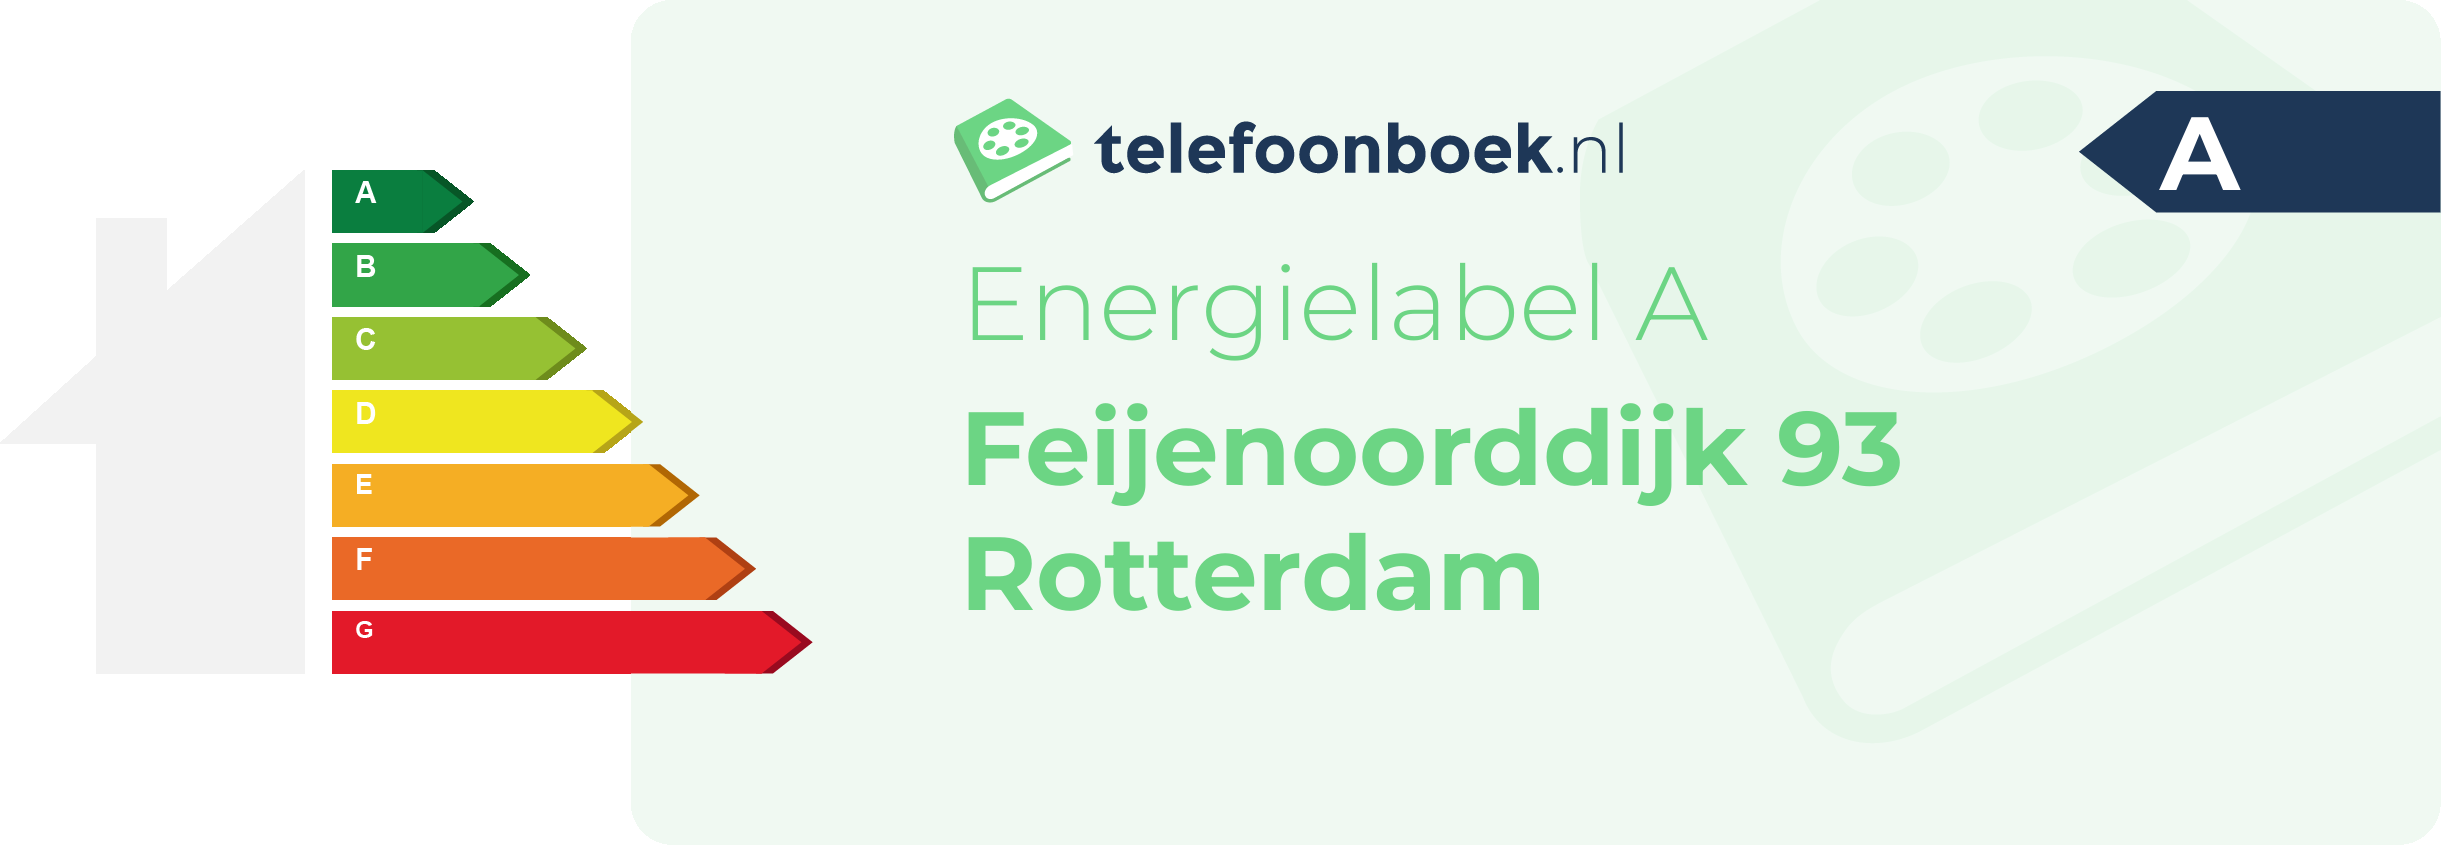 Energielabel Feijenoorddijk 93 Rotterdam